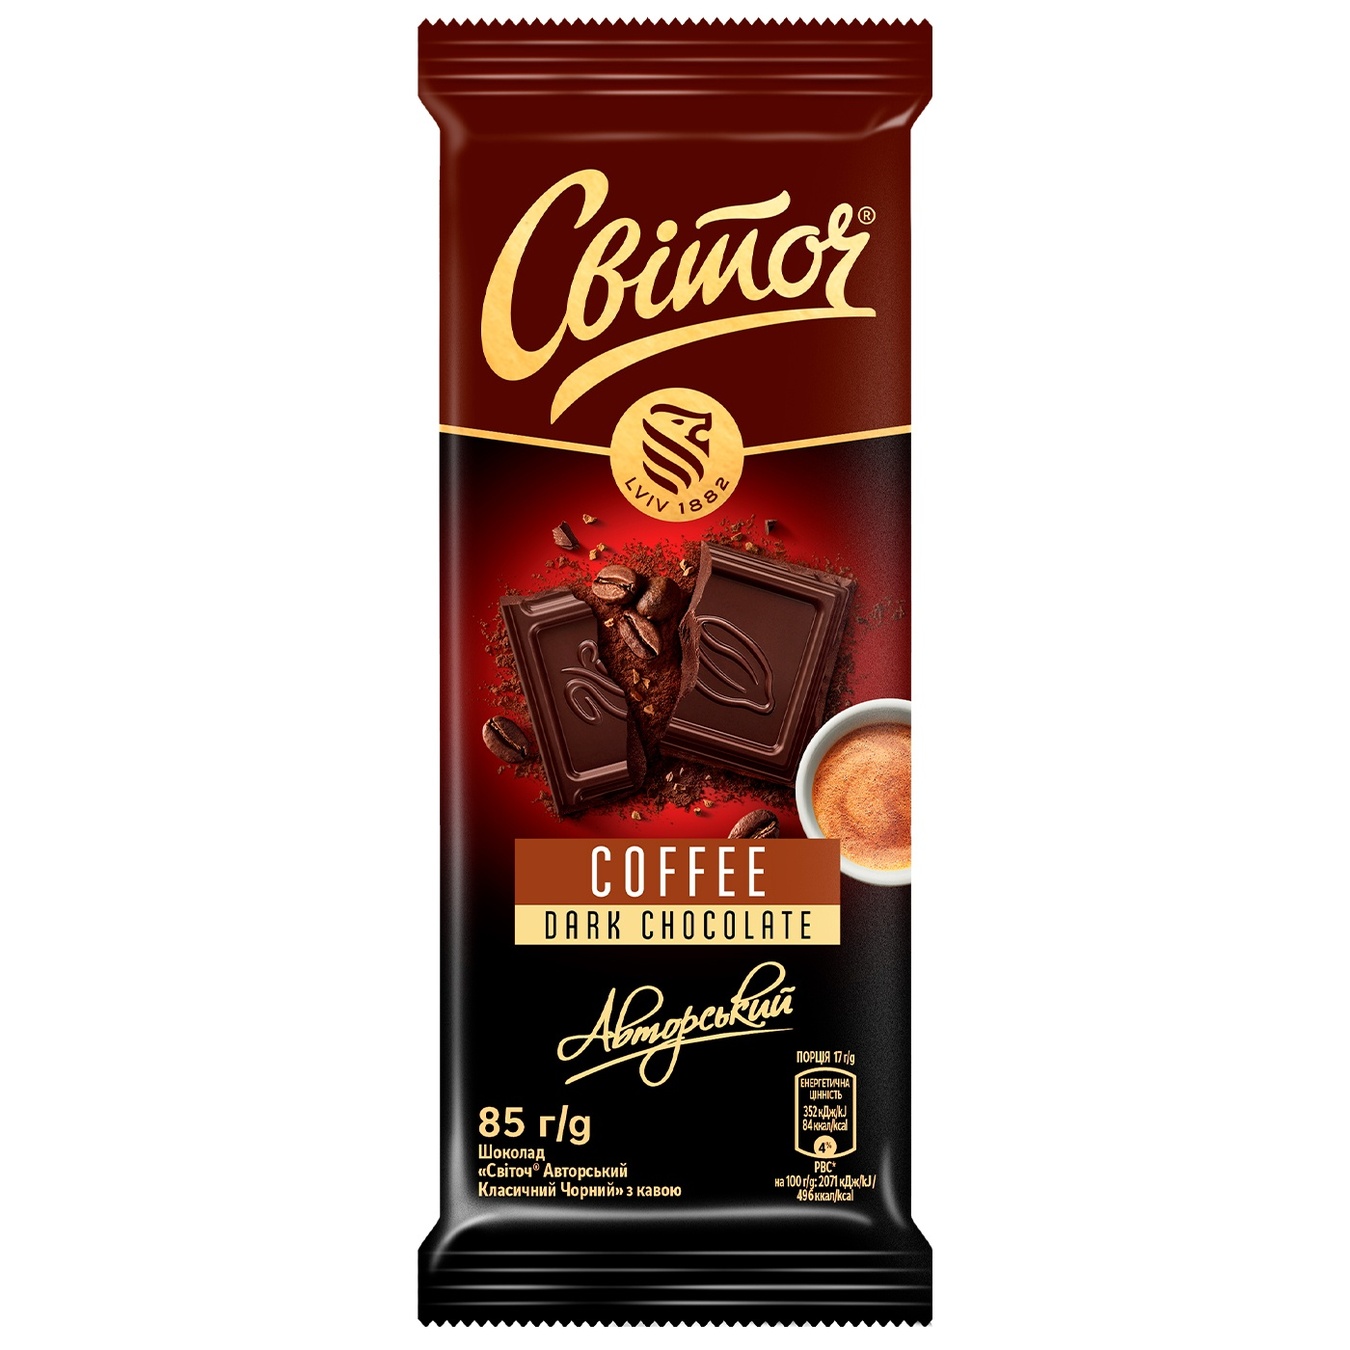 Шоколад Cвіточ Авторський класичний чорний з кавою 85г